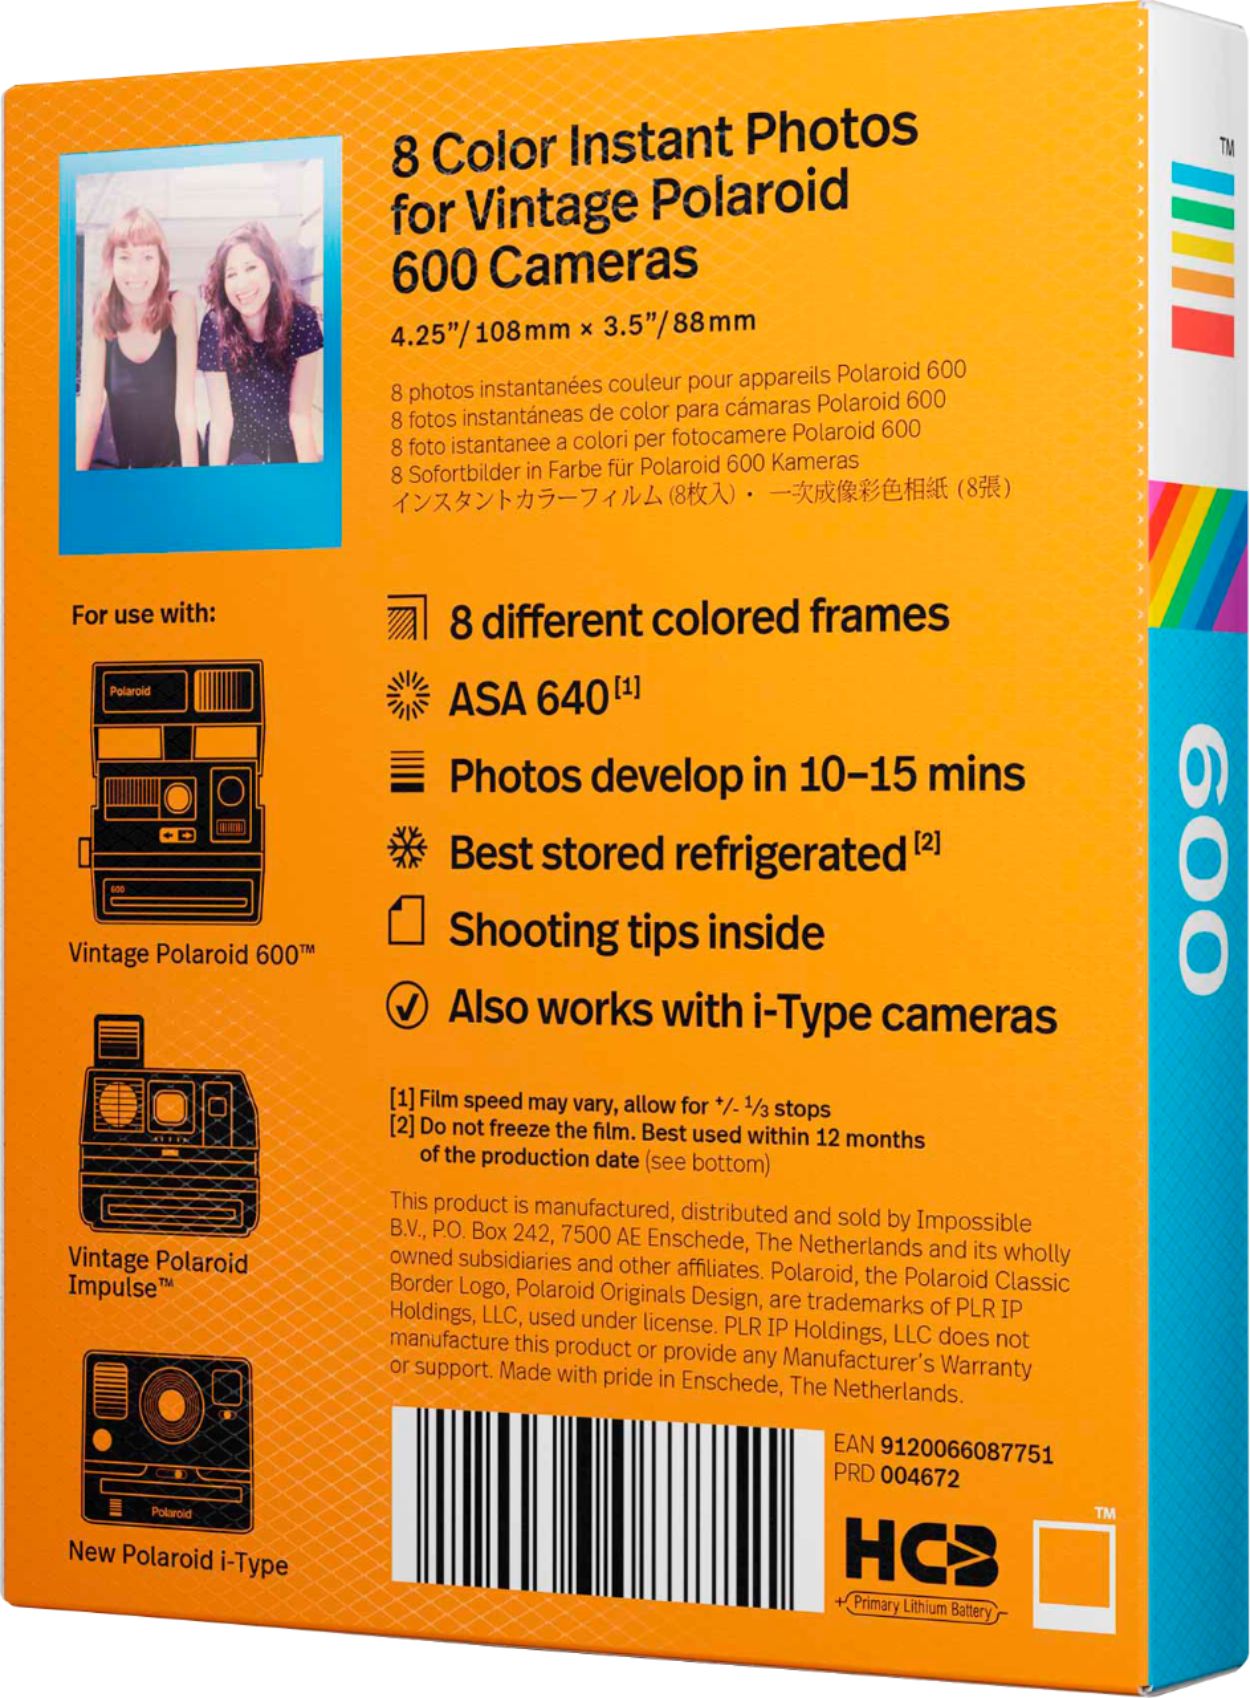 Polaroid Originals Color Film for 600 - Color Frames (4672)